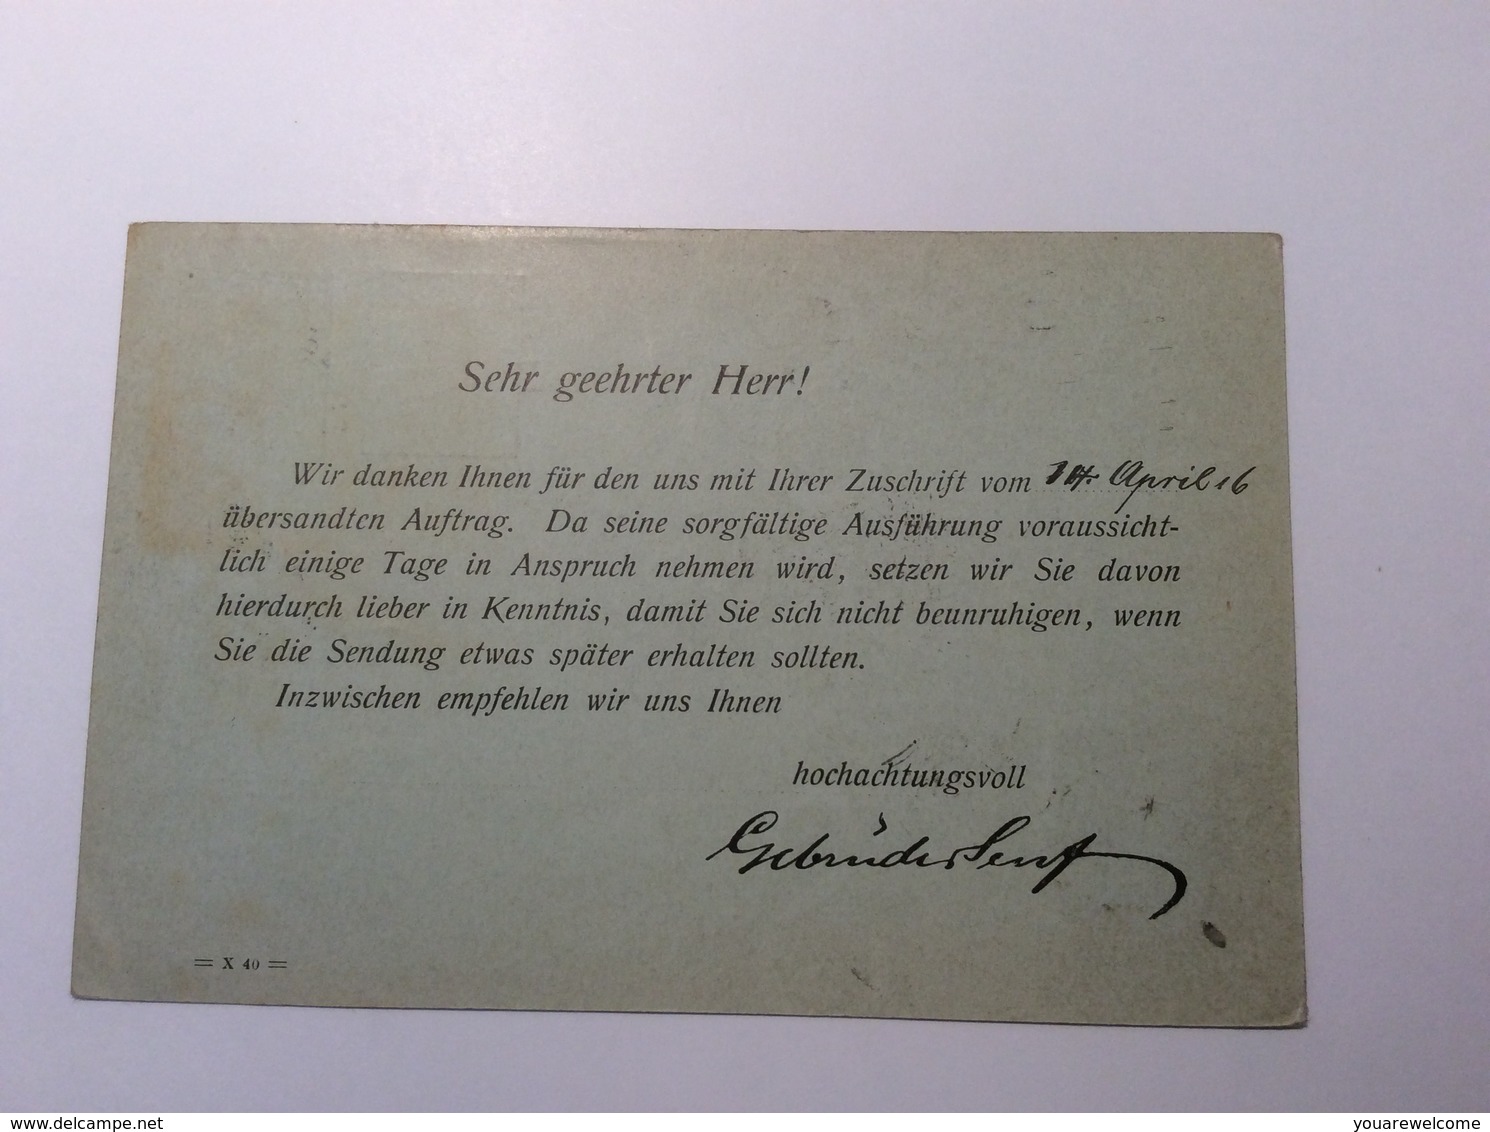 Norway 1916 Postage Due On Deutsches Reich Germania Postal Stationery (Ganzsache Cover Lettre Brief - Briefe U. Dokumente